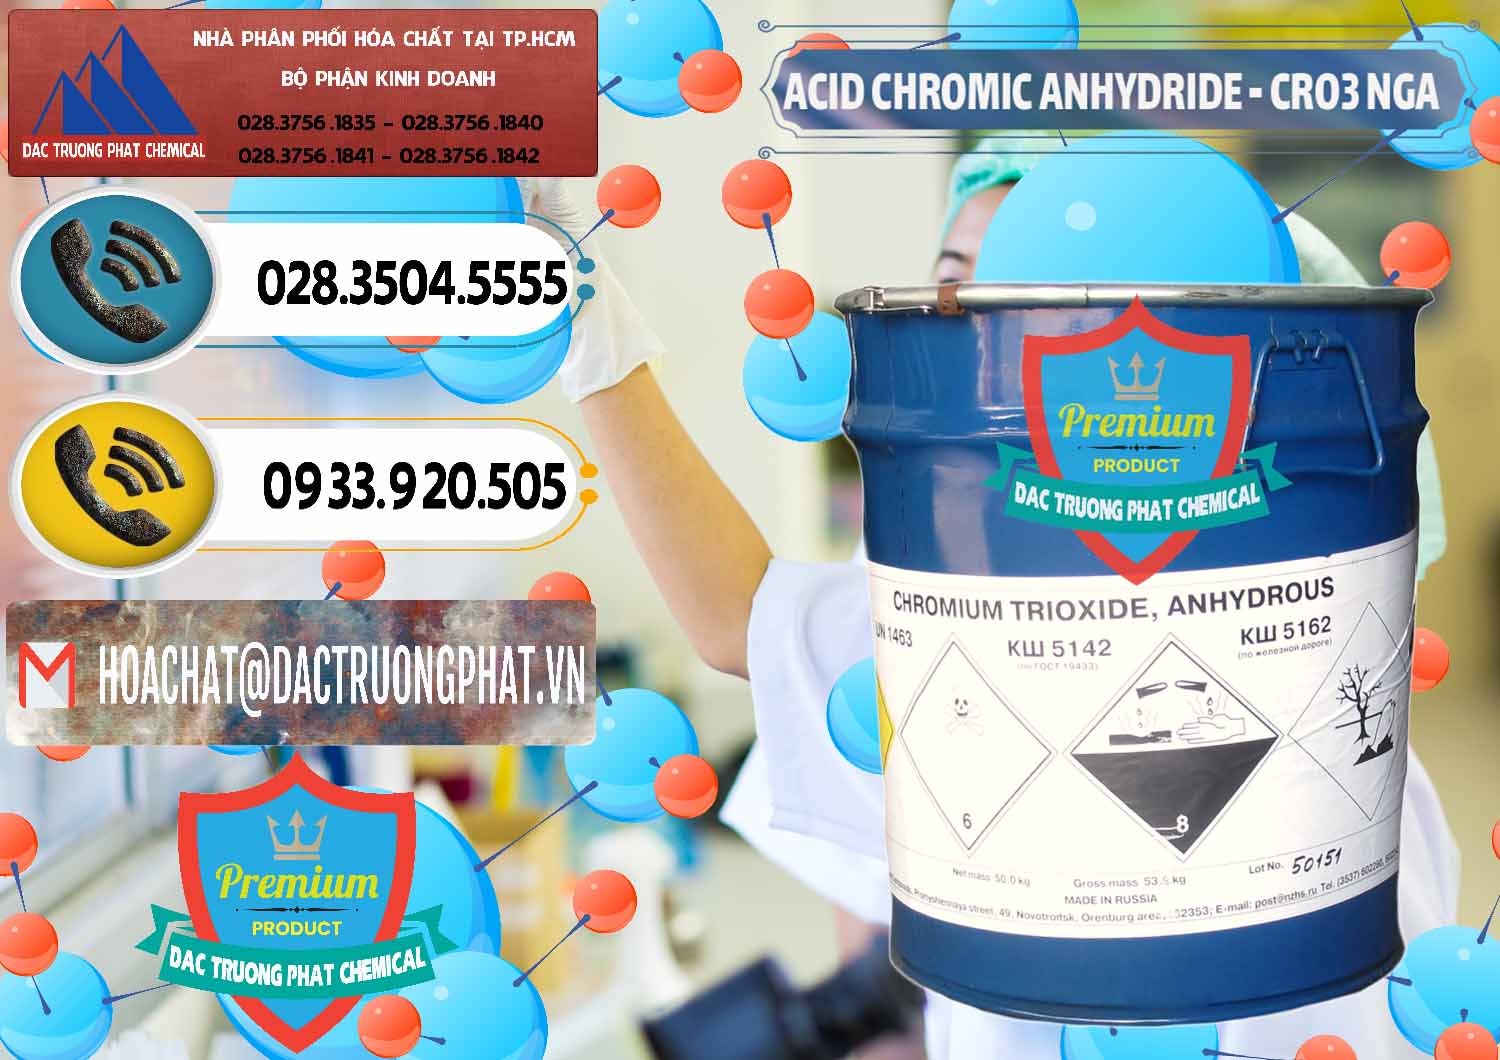 Cung ứng & bán Acid Chromic Anhydride - Cromic CRO3 Nga Russia - 0006 - Công ty chuyên cung cấp & nhập khẩu hóa chất tại TP.HCM - hoachatdetnhuom.vn